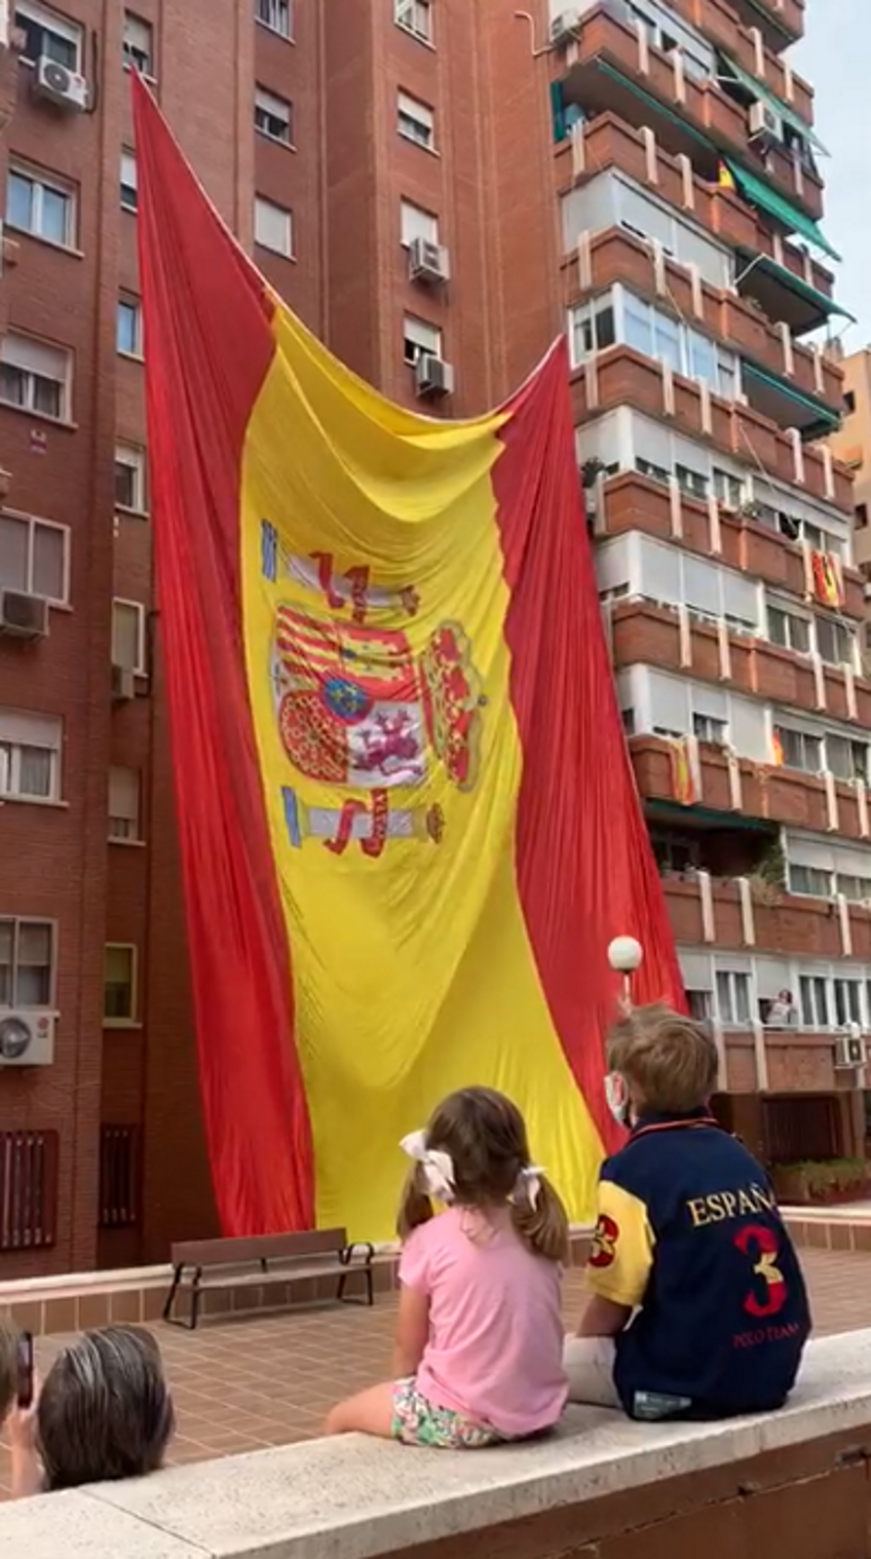 FOTOGRAFÍA. ESPAÑA, 30.05.2020. Día de las Fuerzas Armadas. Un grupo de vecinos celebra el Día de las Fuerzas Armadas izando una gigante bandera. Ñ Pueblo (12)